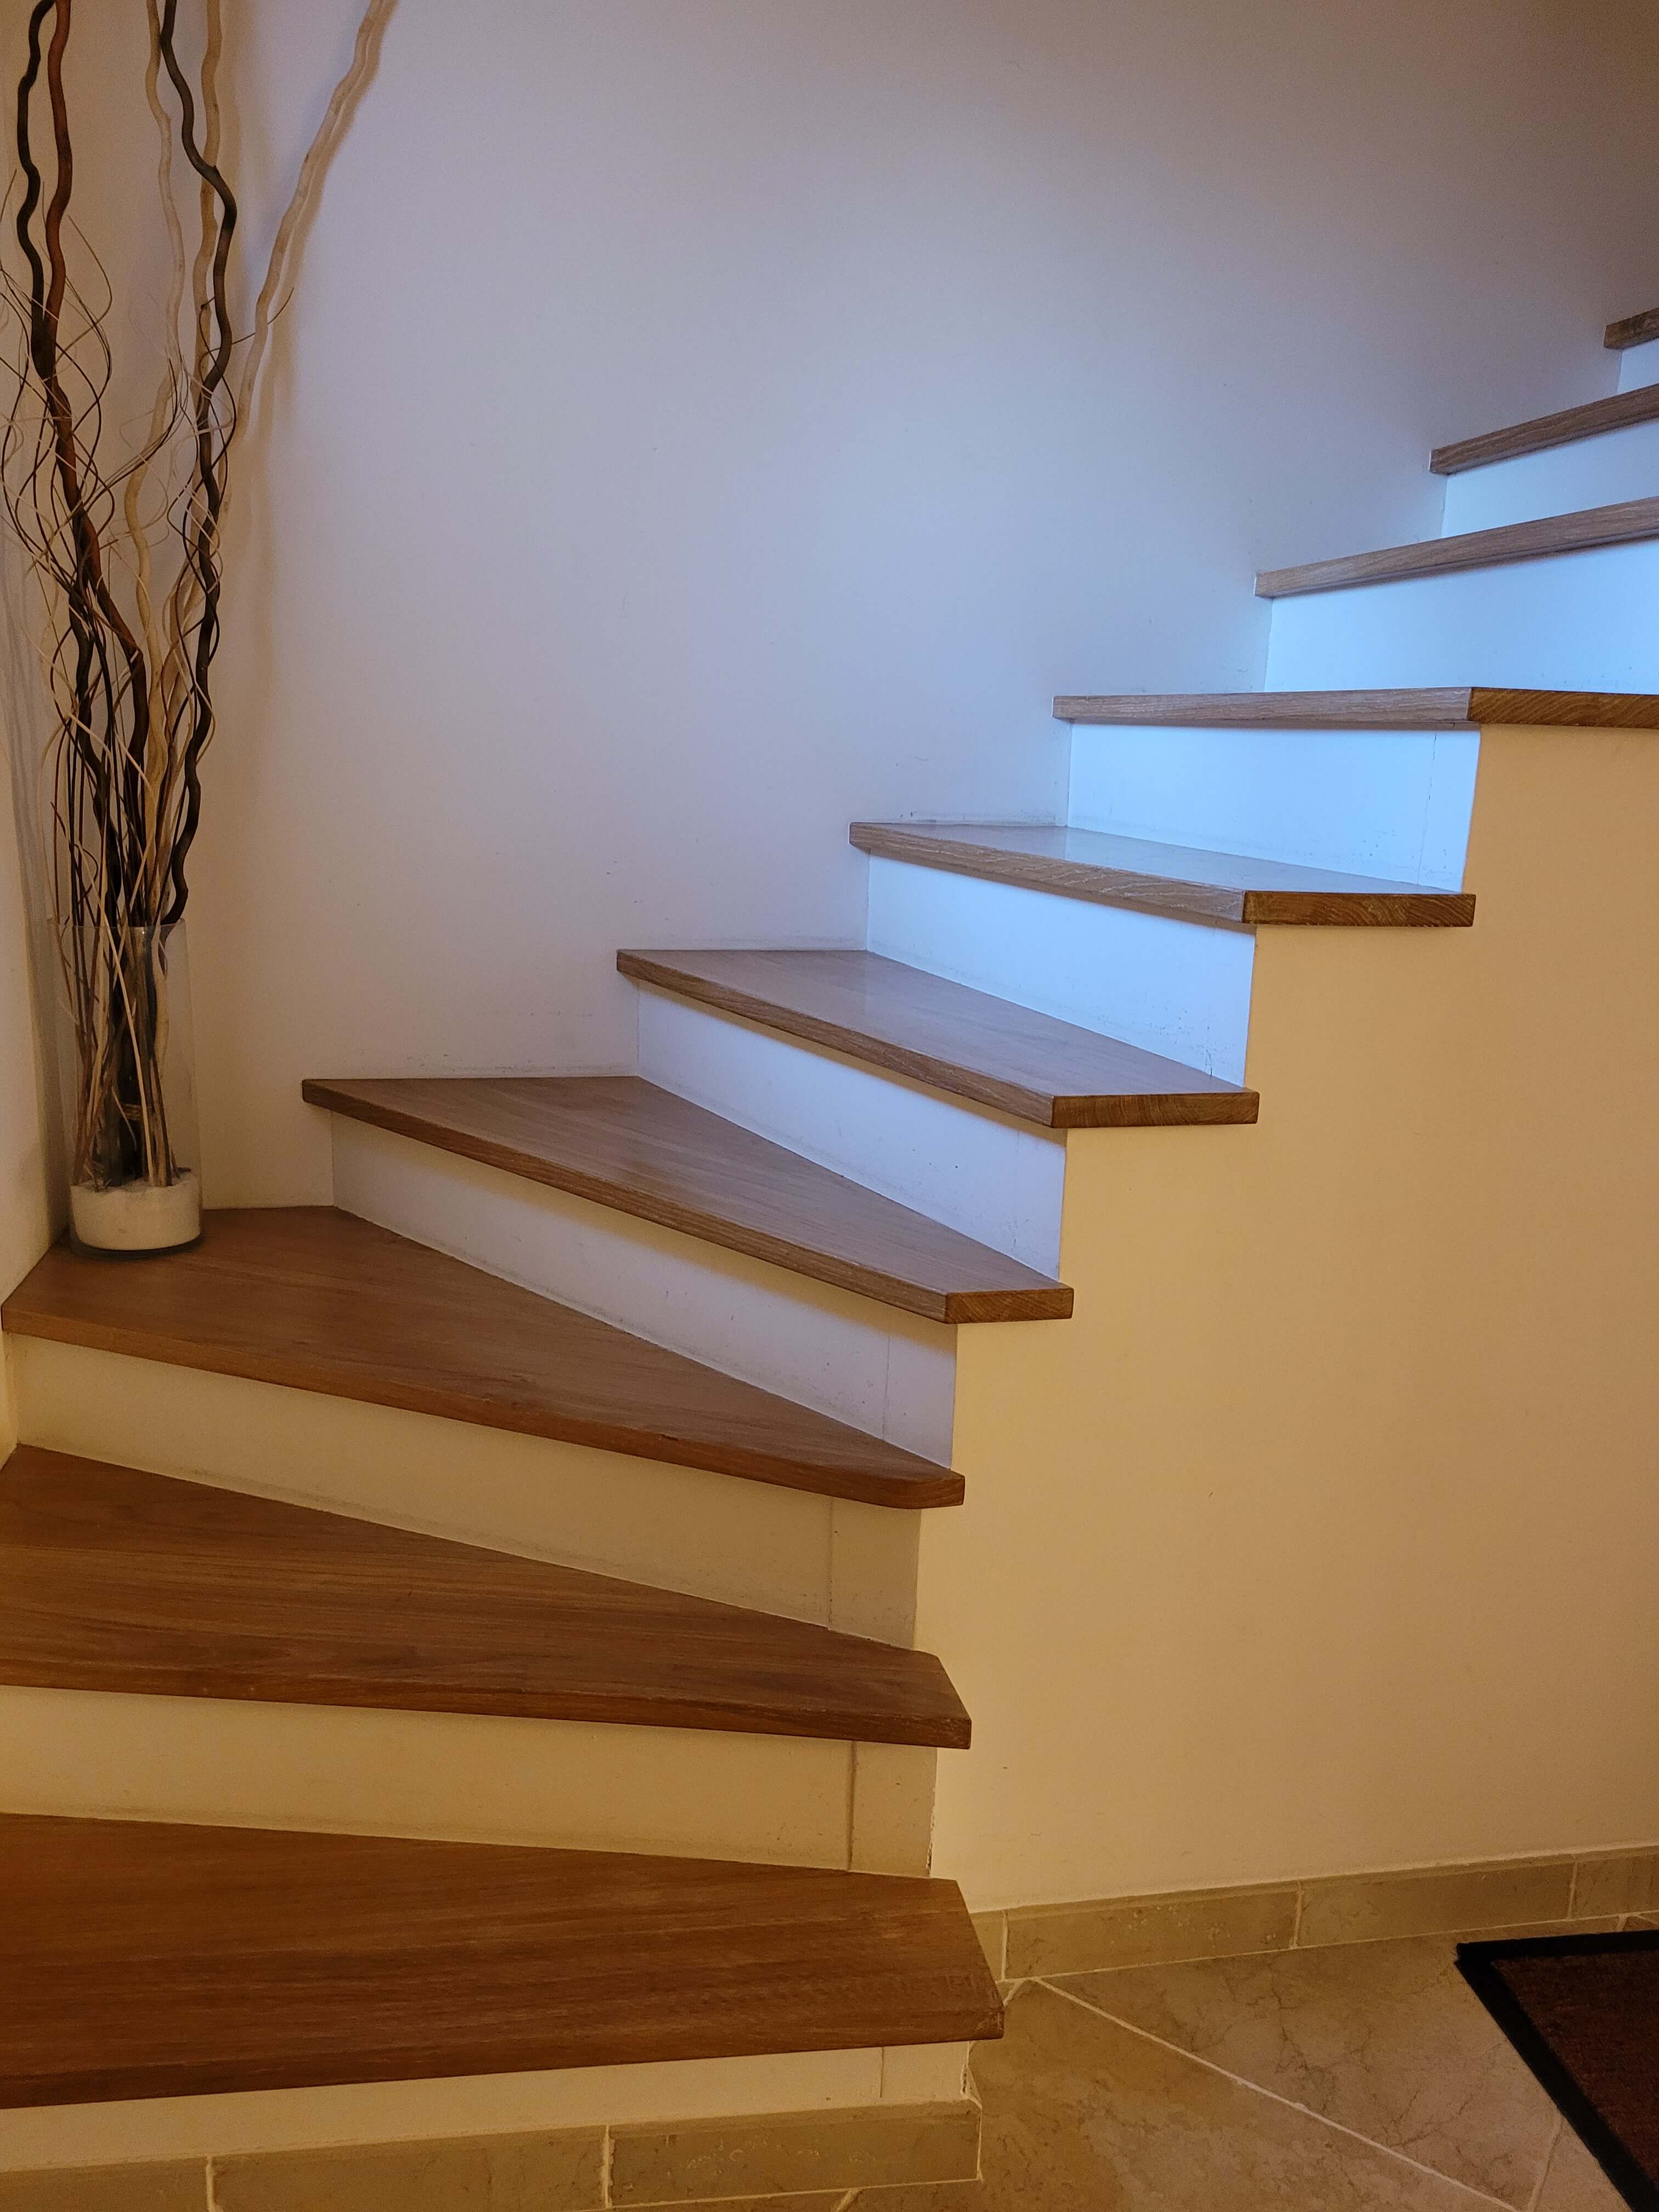 Des escaliers fonctionnels et design dans un style unique